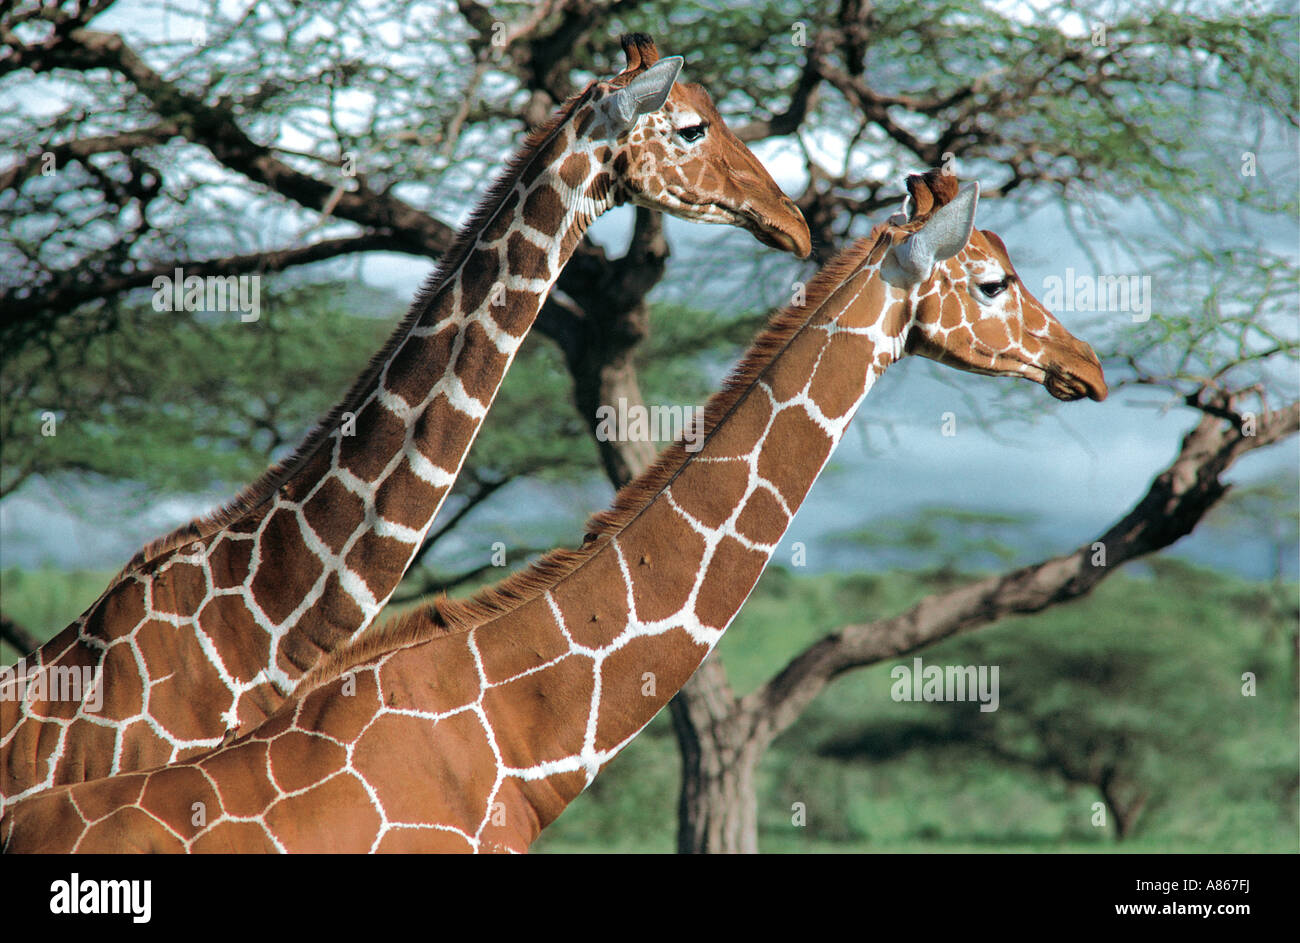 Close up de deux giraffe réticulée dans la posture adoptée en voyant attentif un prédateur de la réserve nationale de Samburu, Kenya Banque D'Images